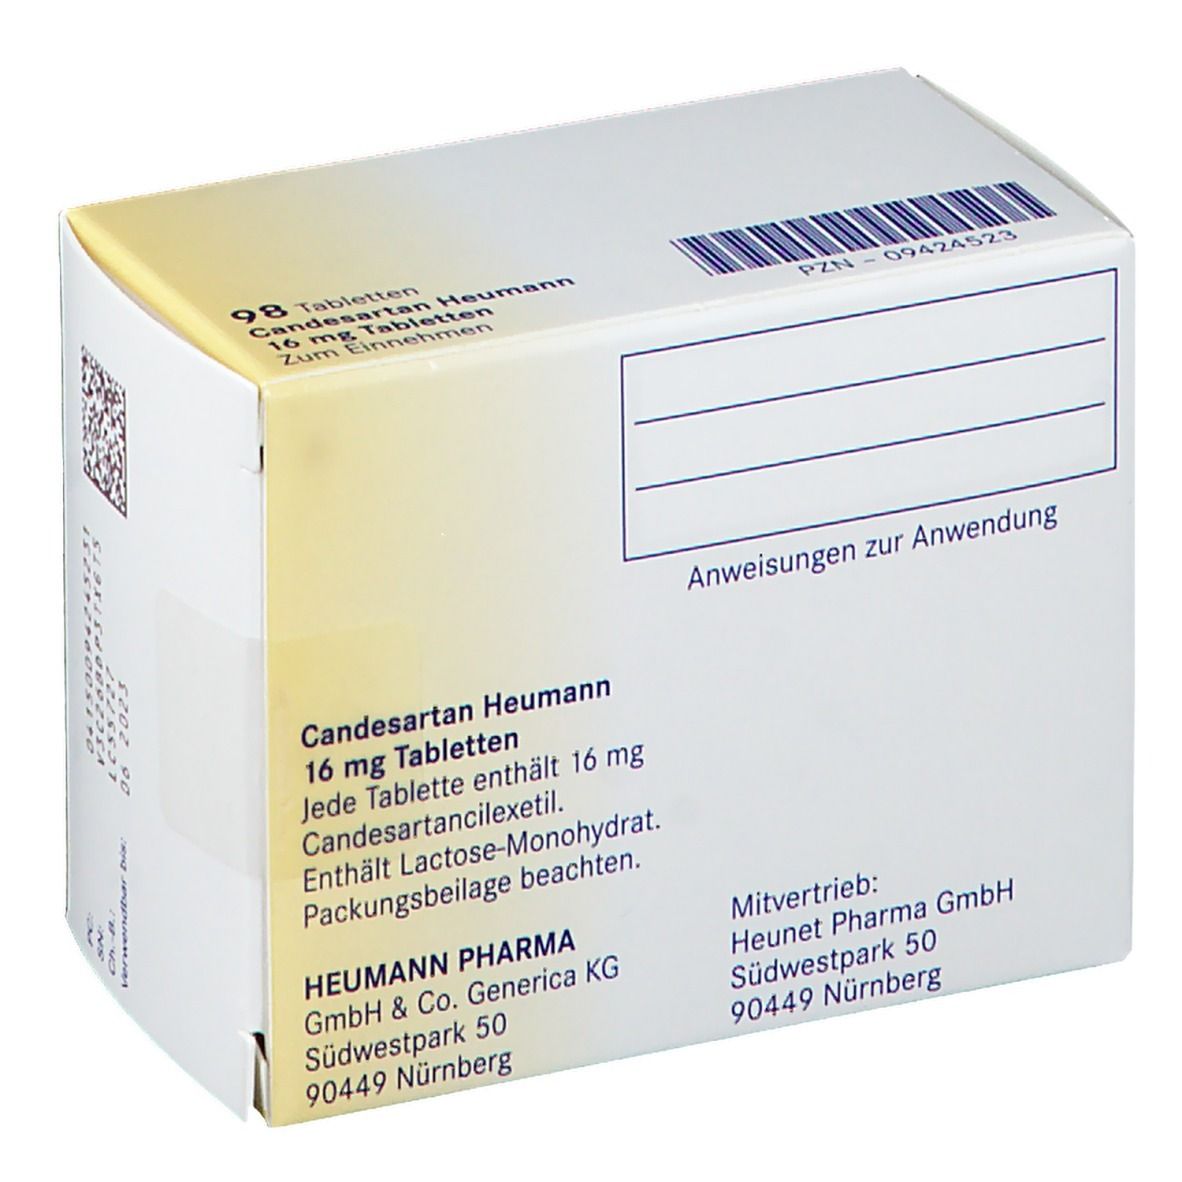 Candesartan Heumann 16 mg